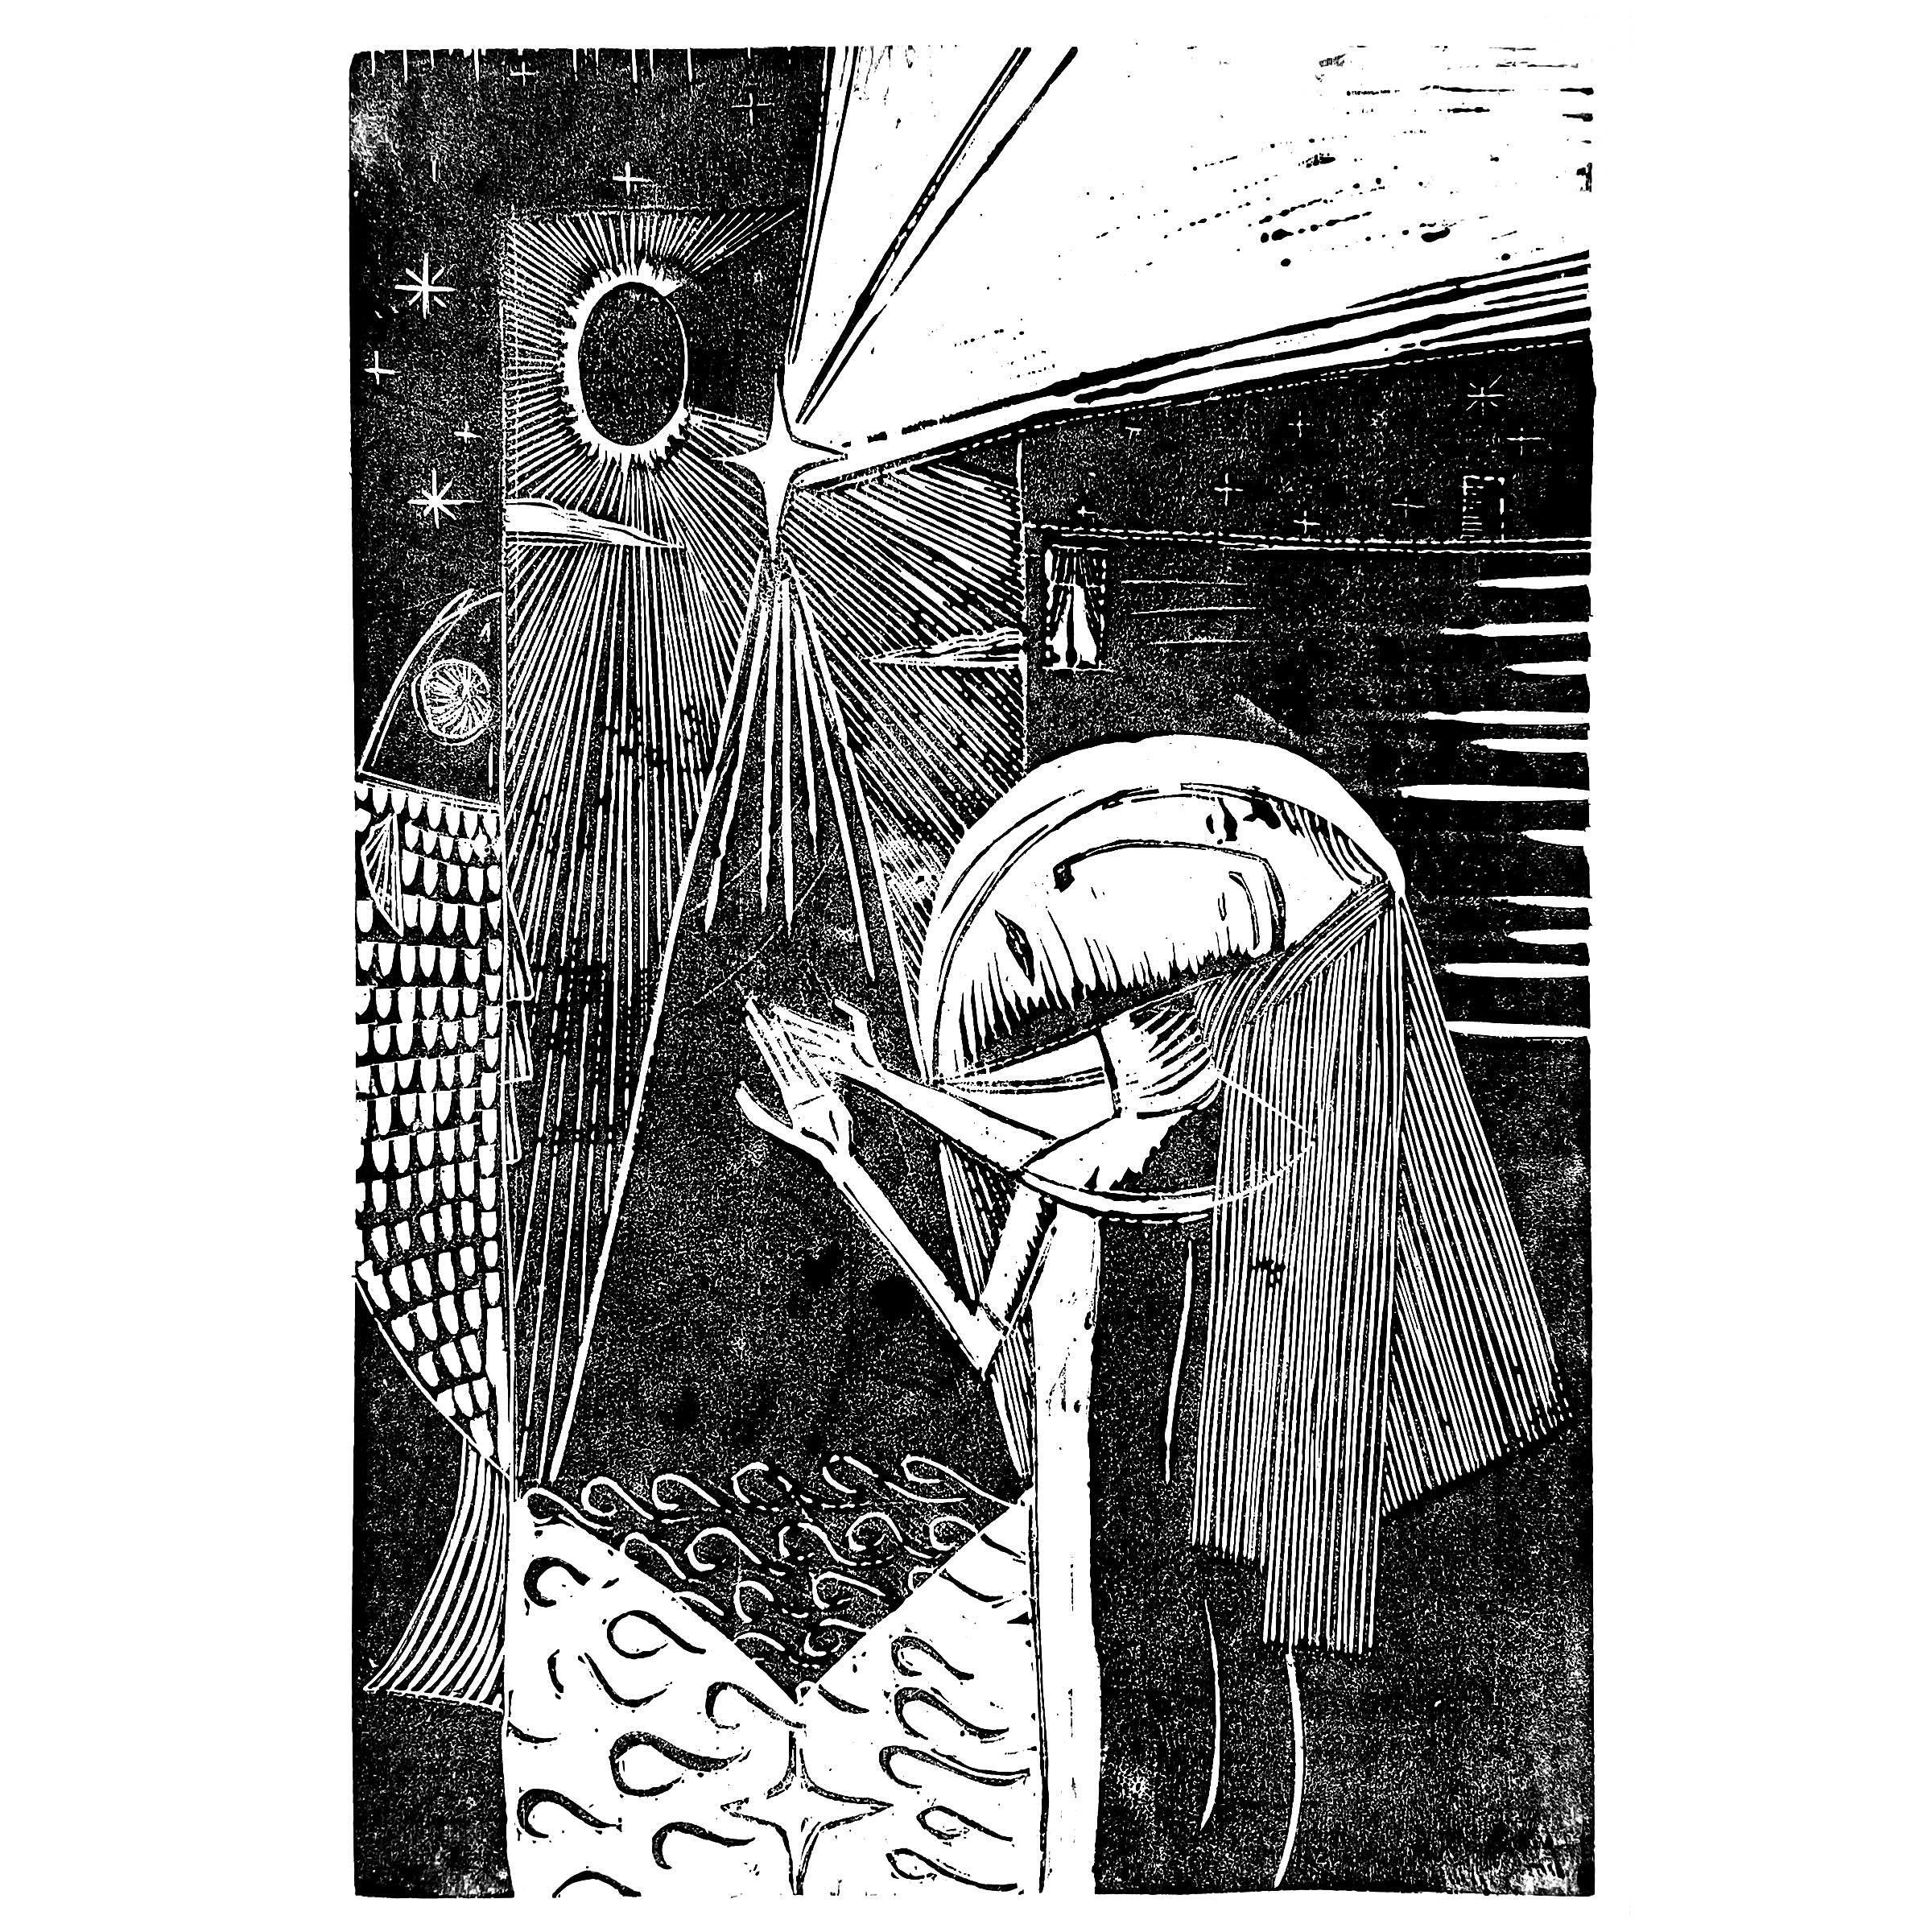 Traum eines Fisches

Holzschnitt // 2024

#traum #dream #fish #fisch #sonne #sonnenfinsternis #solareclipse #woman #frau #nacht #night #light #licht #phantasy #agnesopencall #art #kunst #holzschnitt #woodcut #kunstwerk #artwork #druck #print